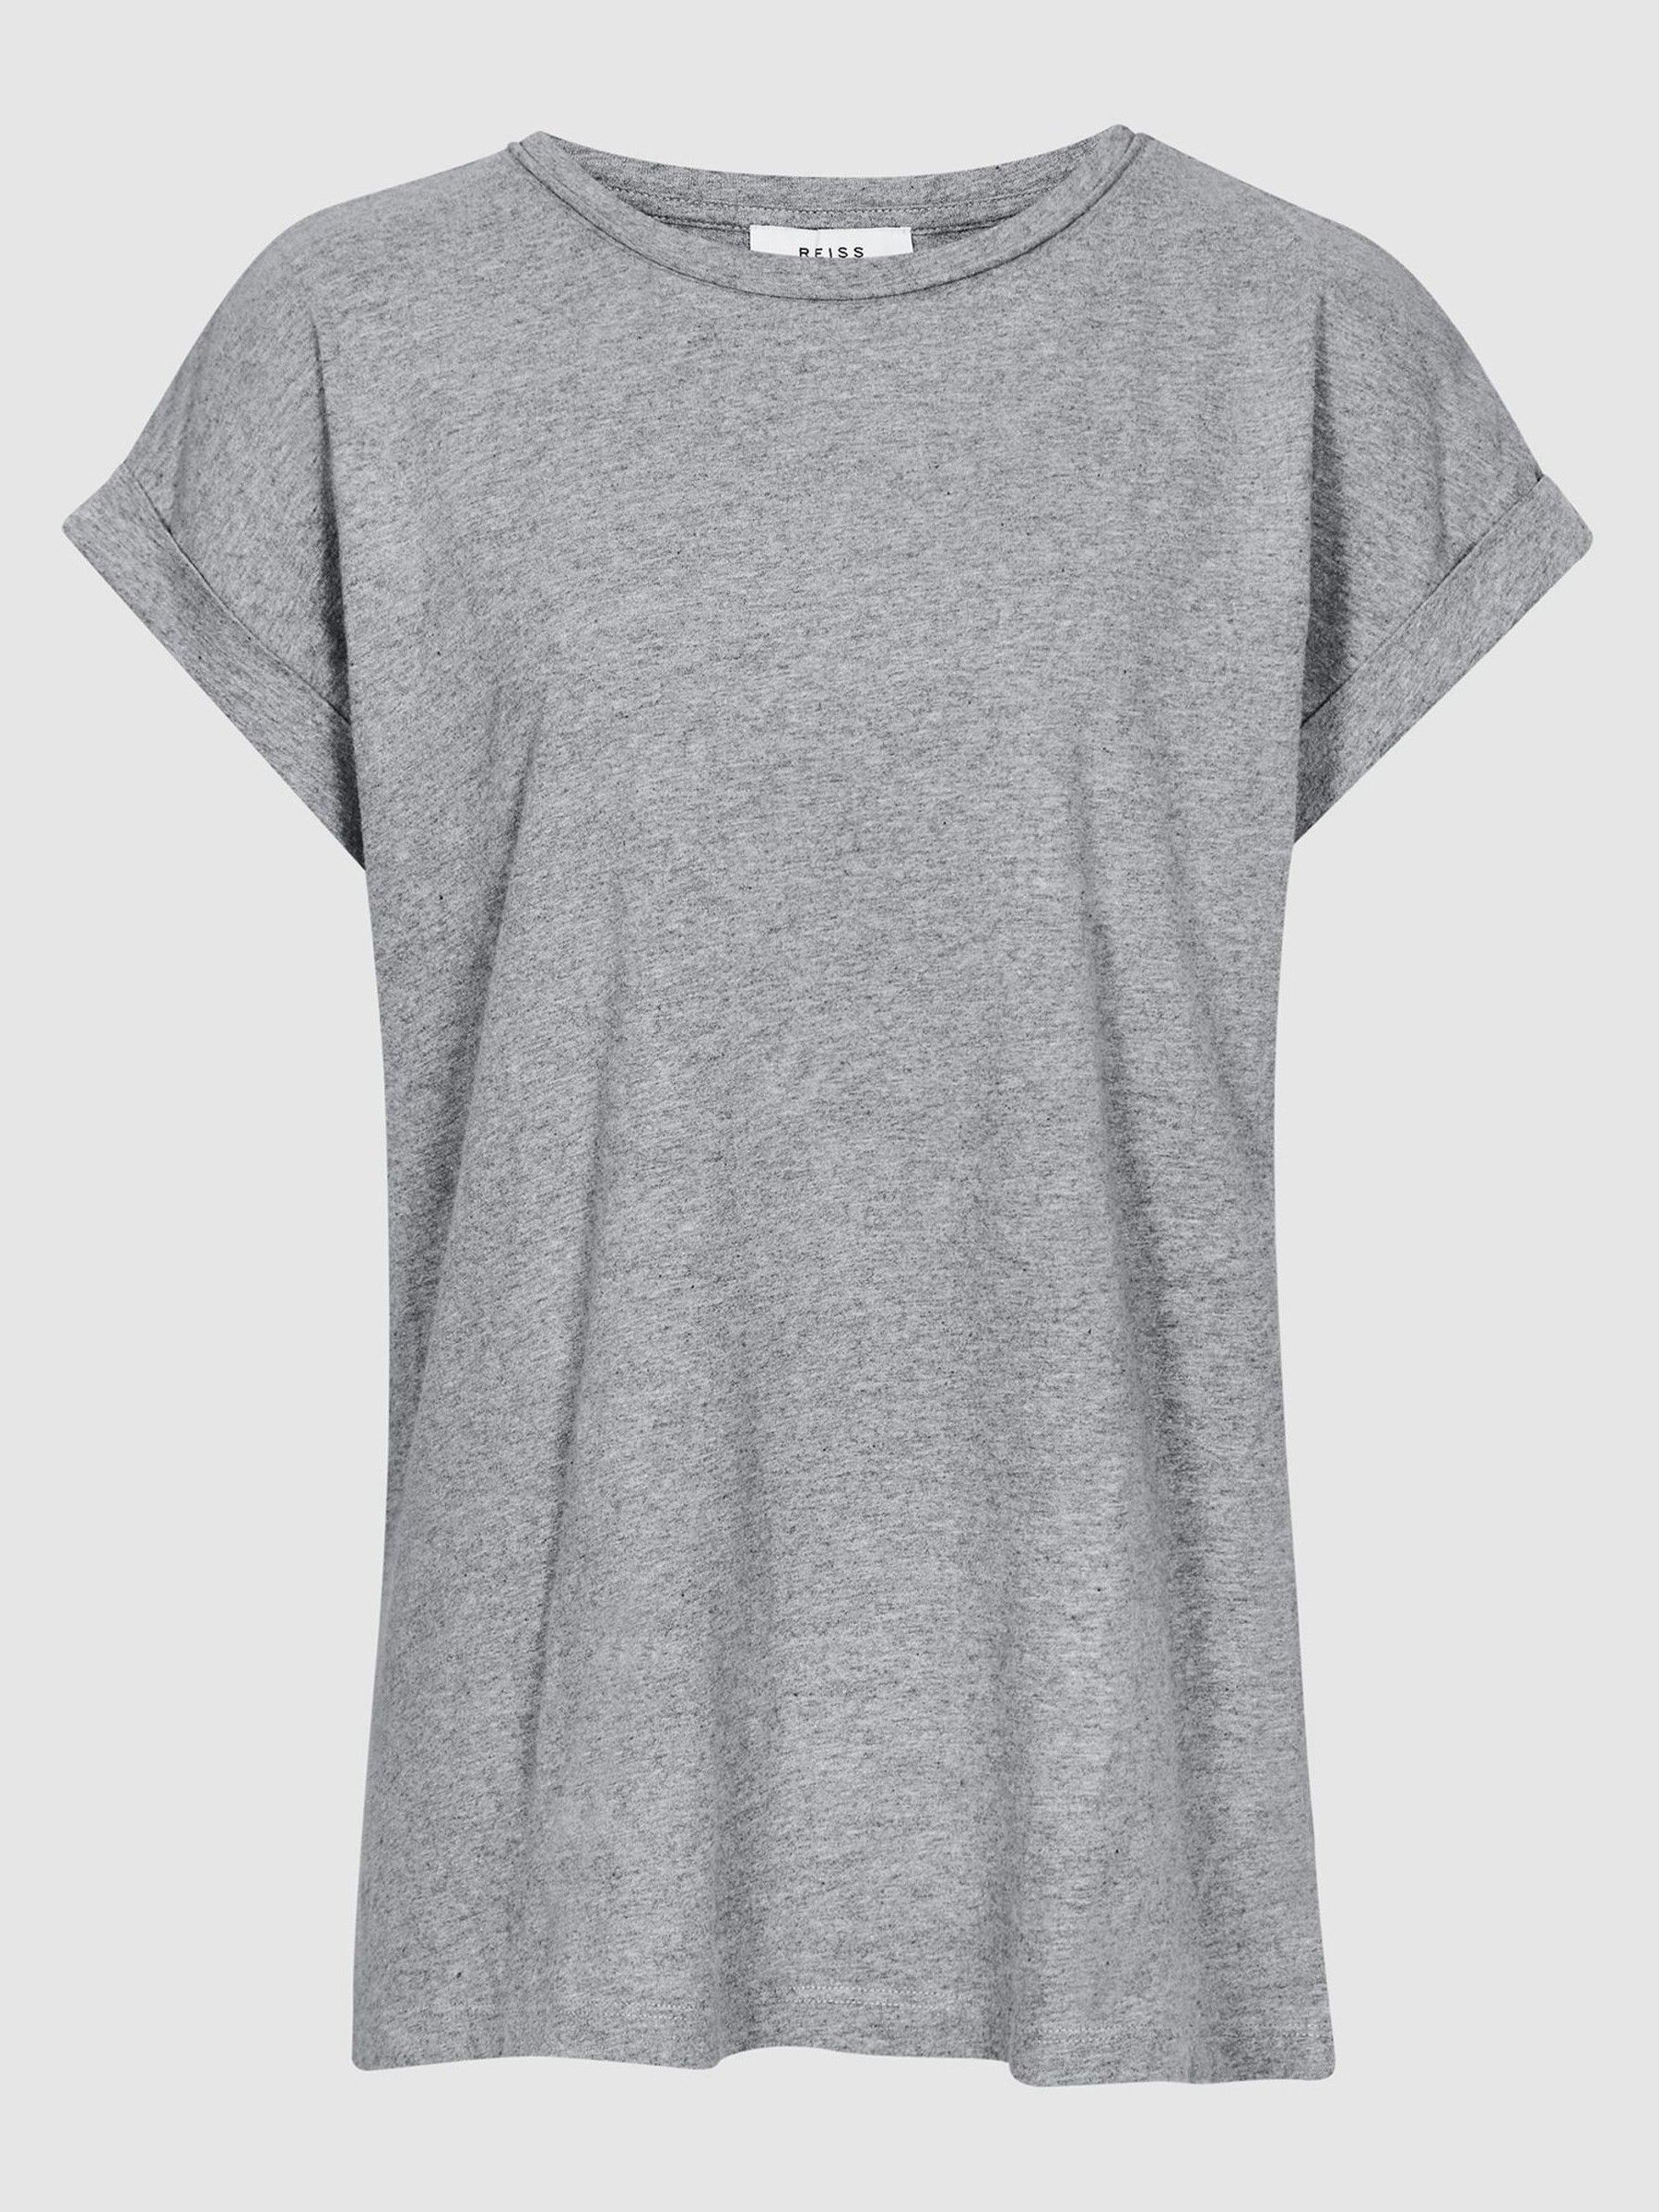 Reiss Tereza Cotton Jersey T-Shirt - REISS